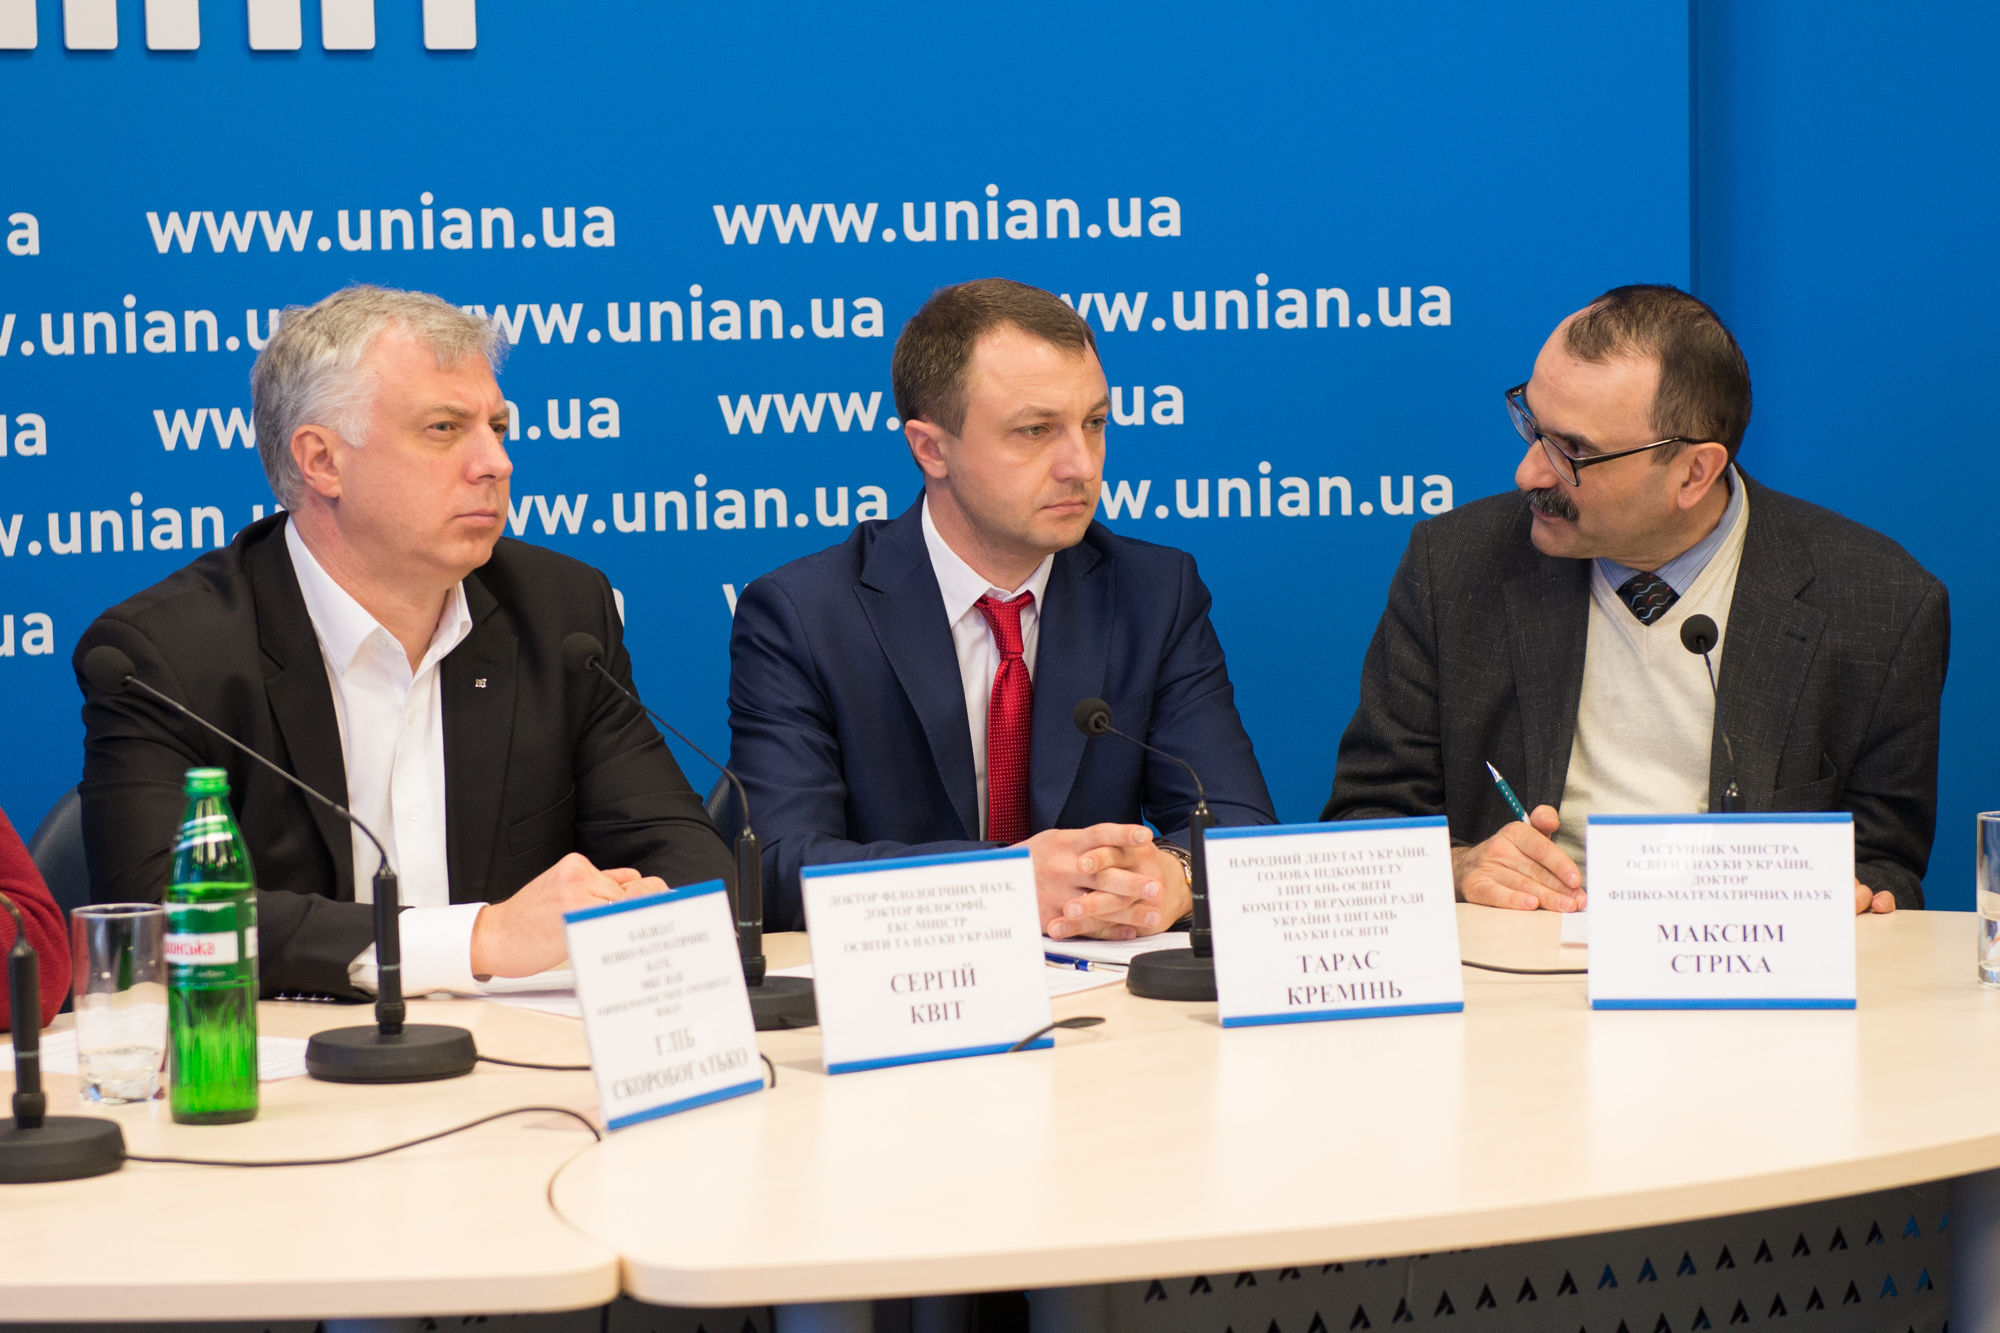 ТСН ініціювала публічну дискусію, щоб підтримати українських вчених